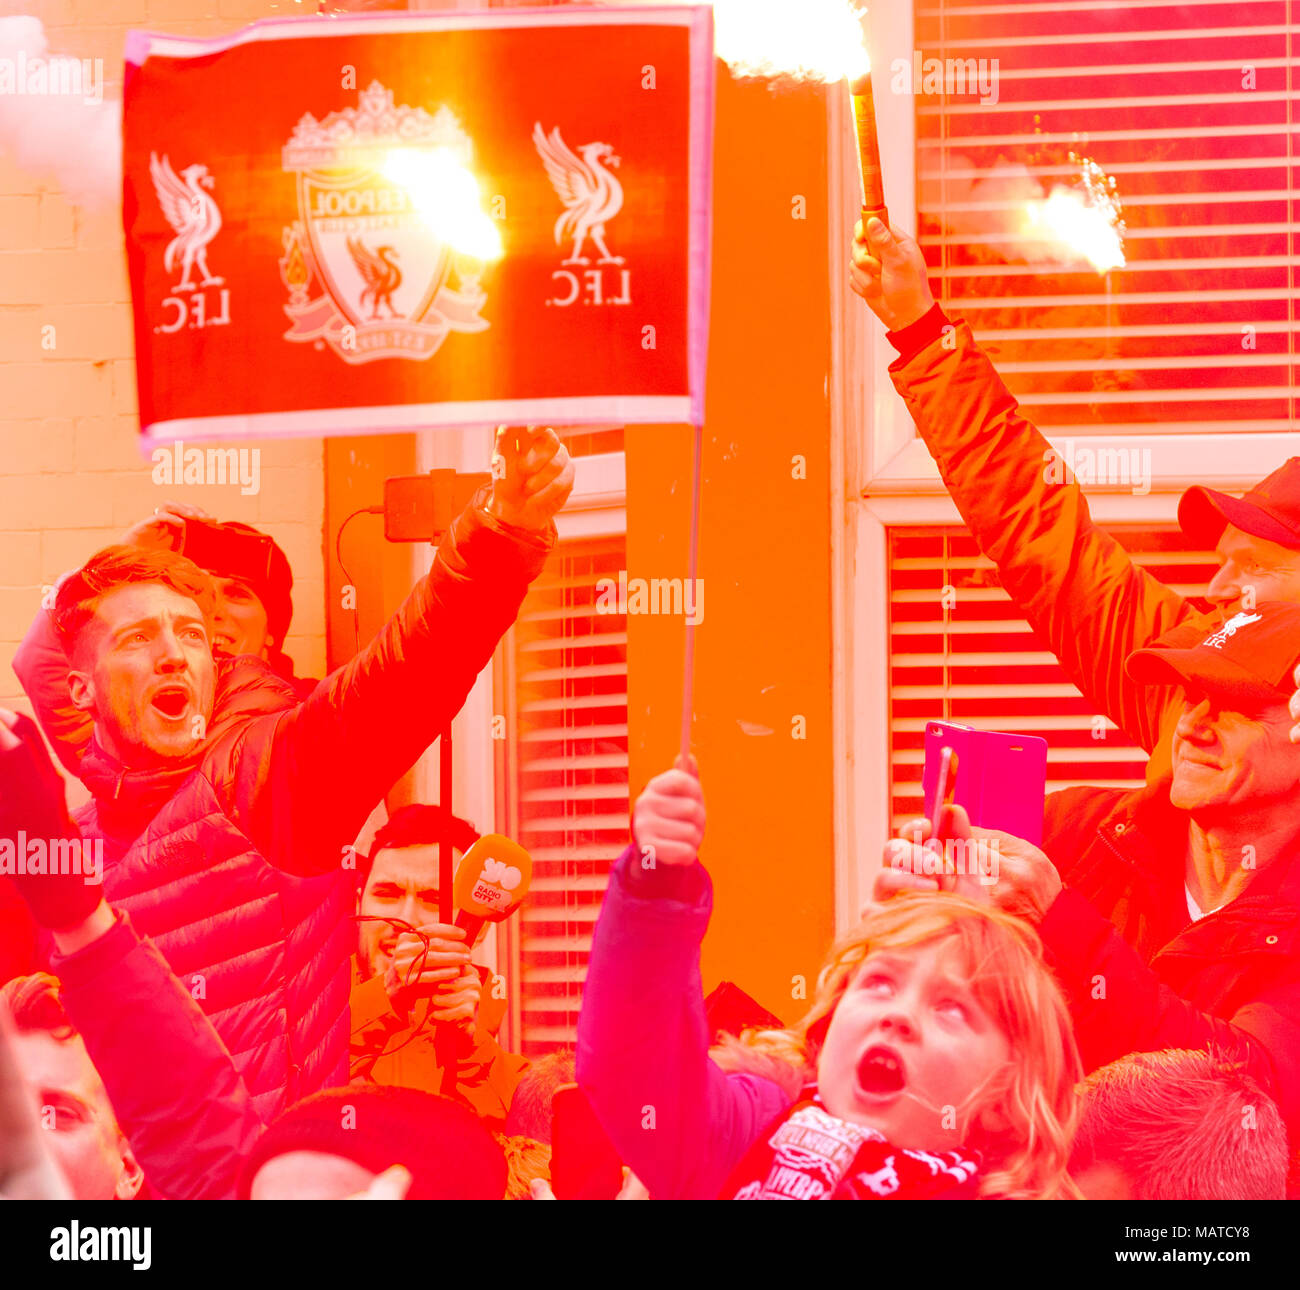 Anfield, UK. 4ème apr 2018. Anfield, Liverpool, Angleterre ; quart de finale de la Ligue des Champions, première étape, Liverpool v Manchester City, Liverpool FC fans d'avance Crédit : Nouvelles Images/Alamy Live News Banque D'Images